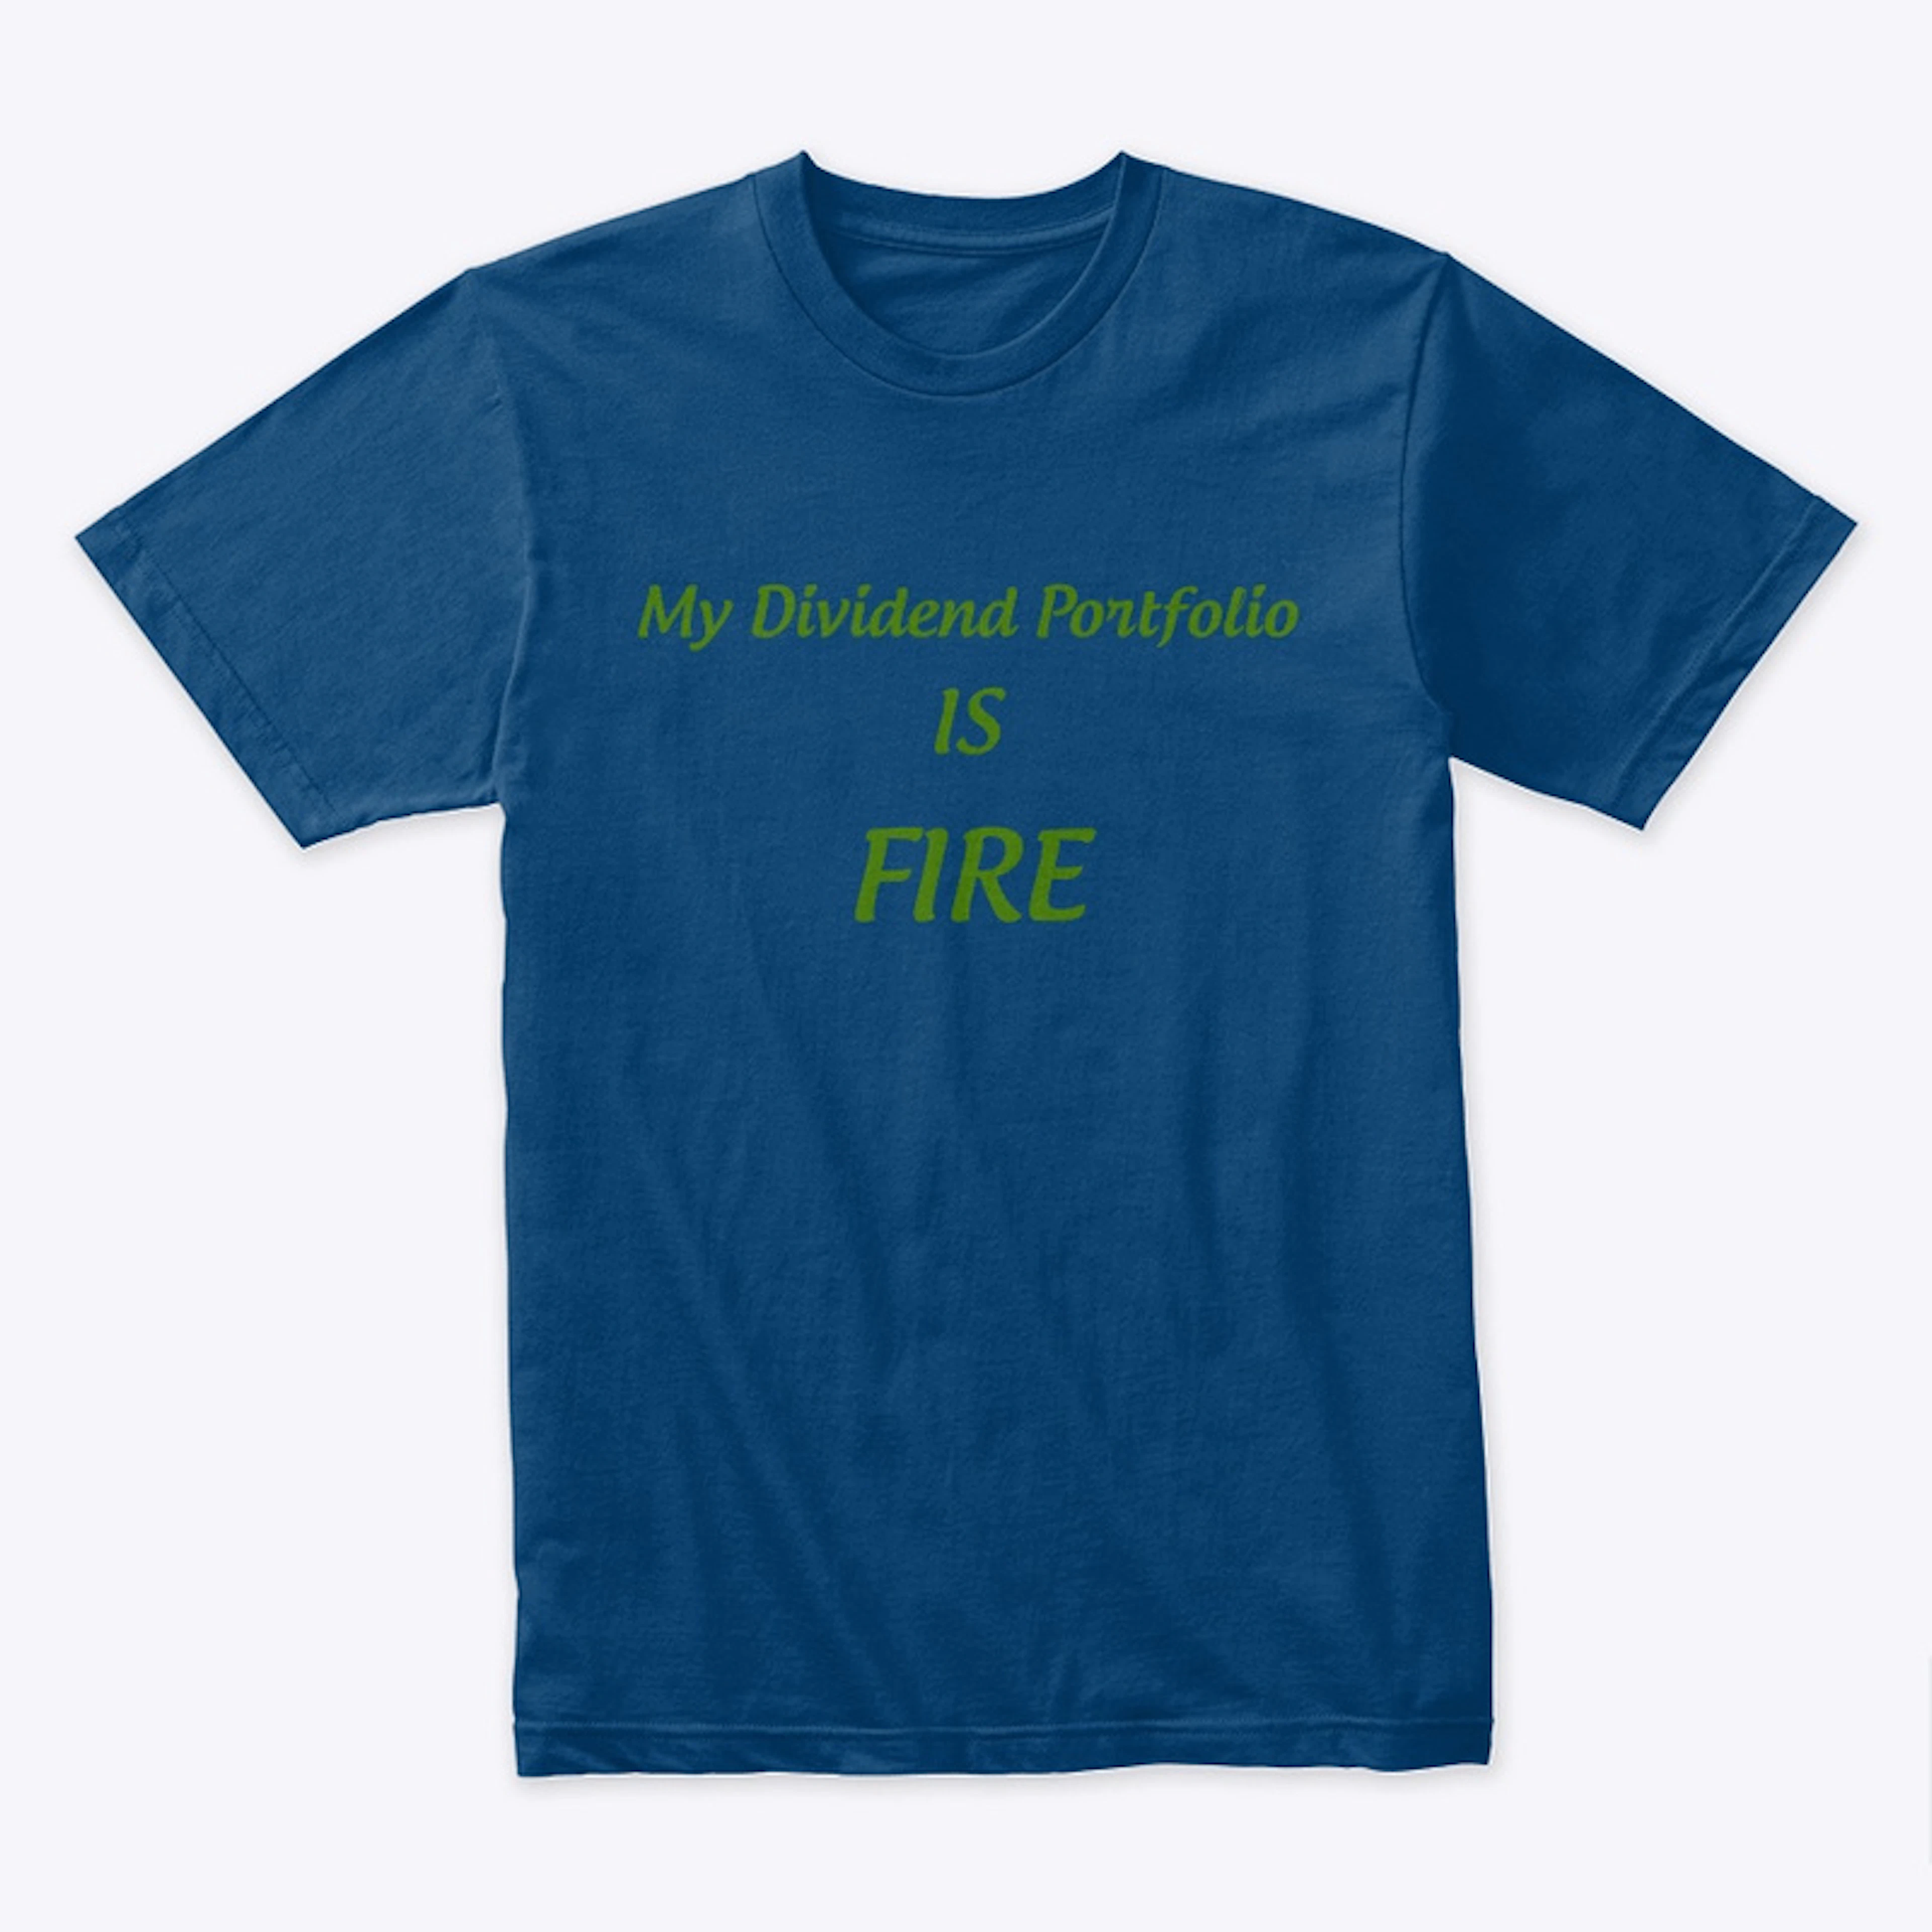 My Dividend Portfolio is FIRE